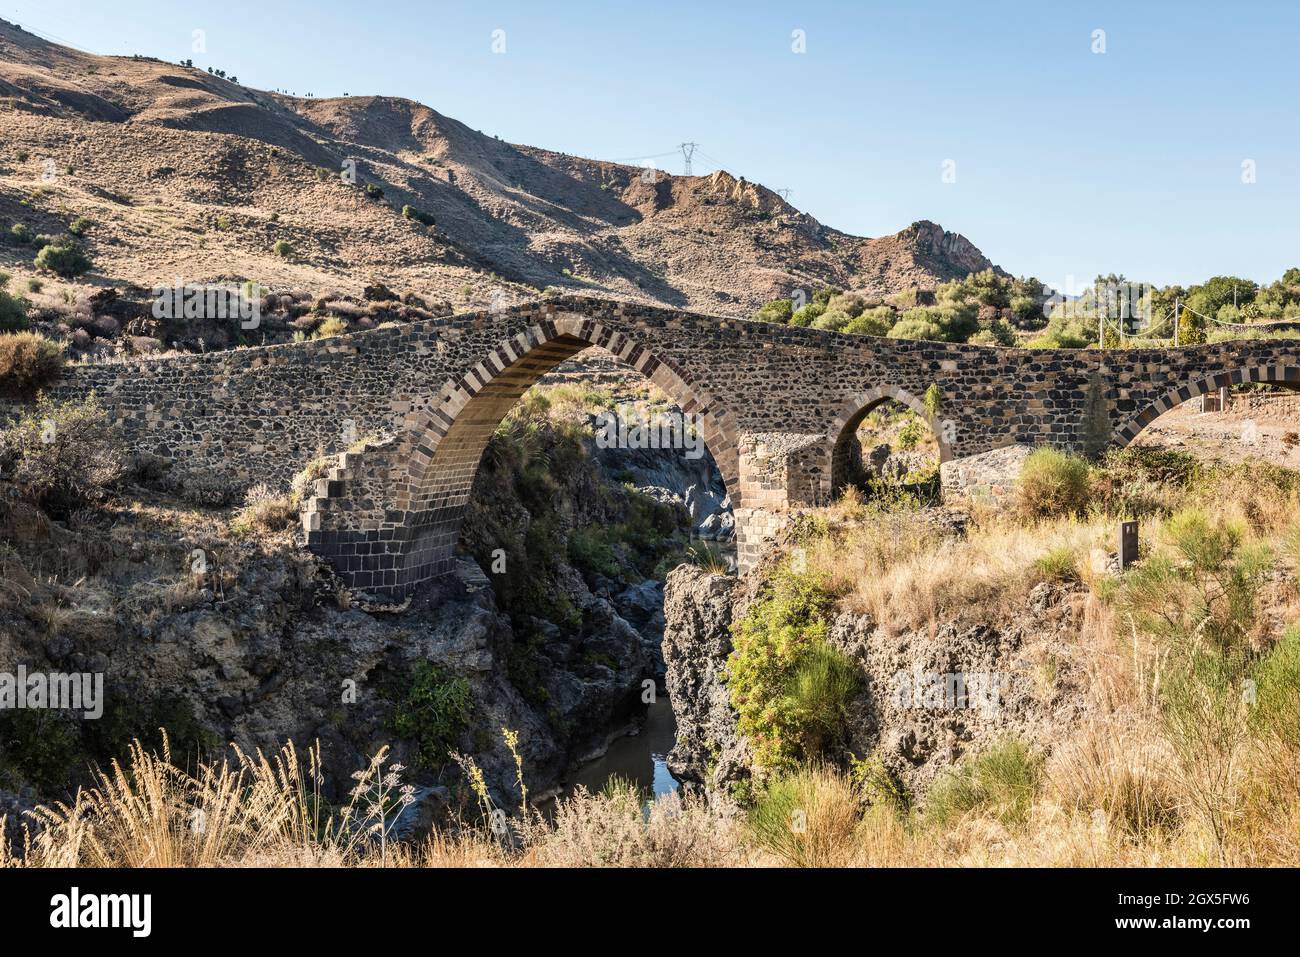 Il Ponte dei Saraceni (Ponte dei Saraceni) sul fiume Simeto, nei pressi di Adrano, Sicilia. Risalente al 11c, è stato ricostruito più volte Foto Stock